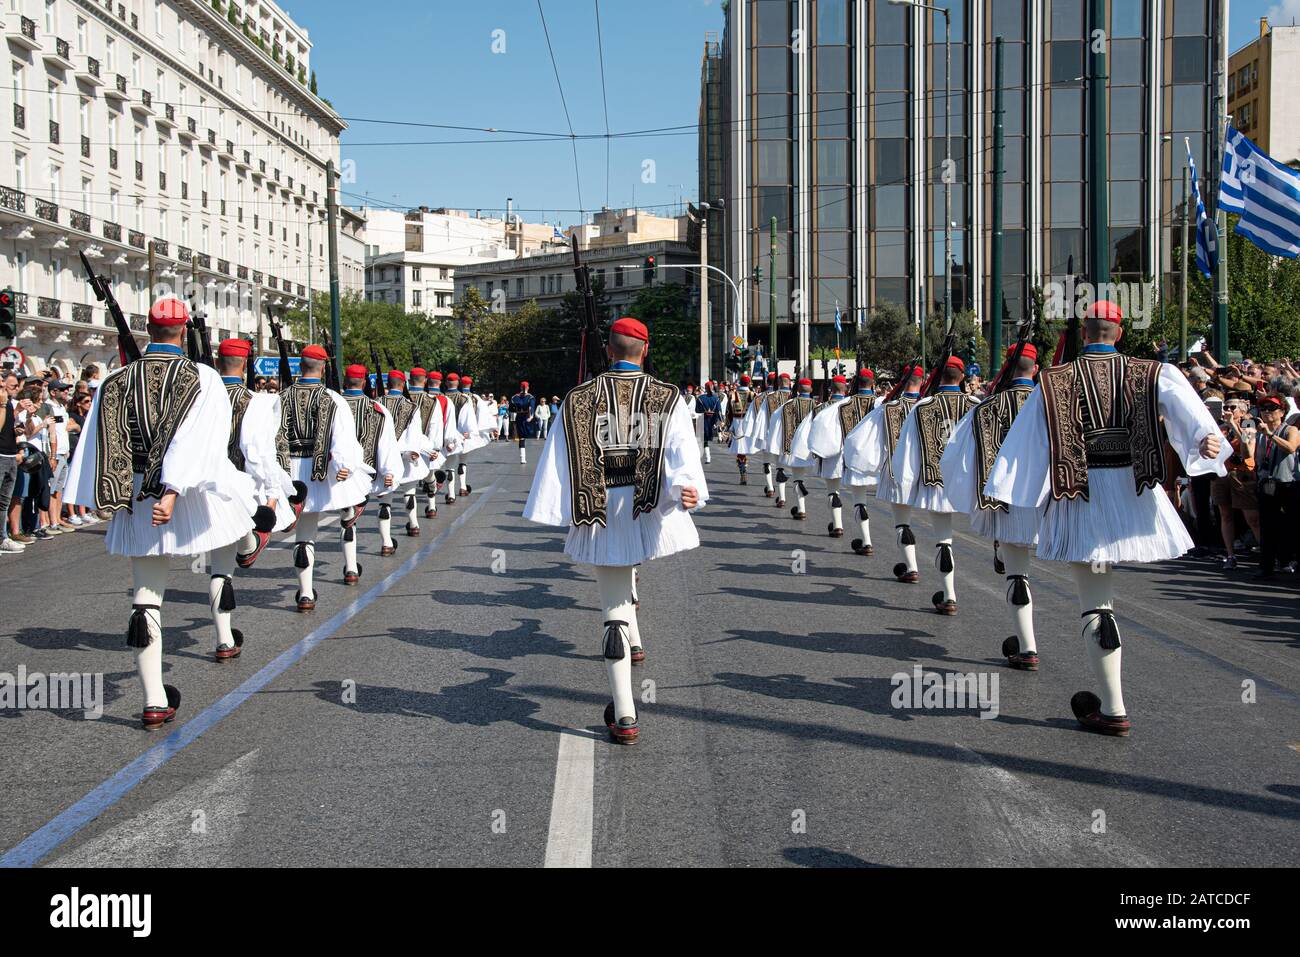 Guardie evzone presidenziali greche vestite di uniformi tradizionali, sfilate a piazza Syntagam ad Atene Grecia Foto Stock